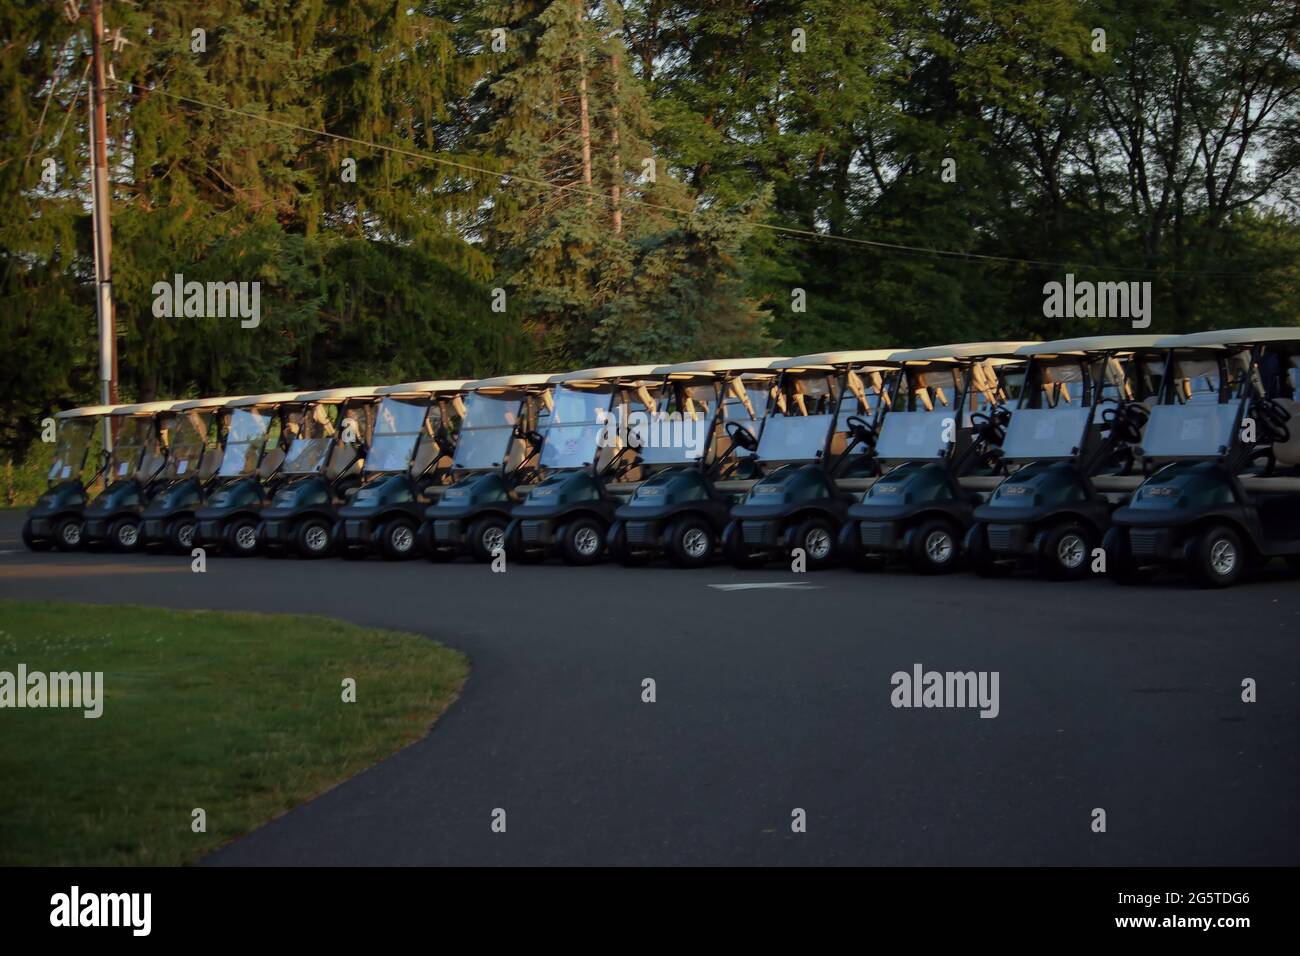 Una linea di carrelli da golf pronti per i golfers a giocare il torneo Foto Stock